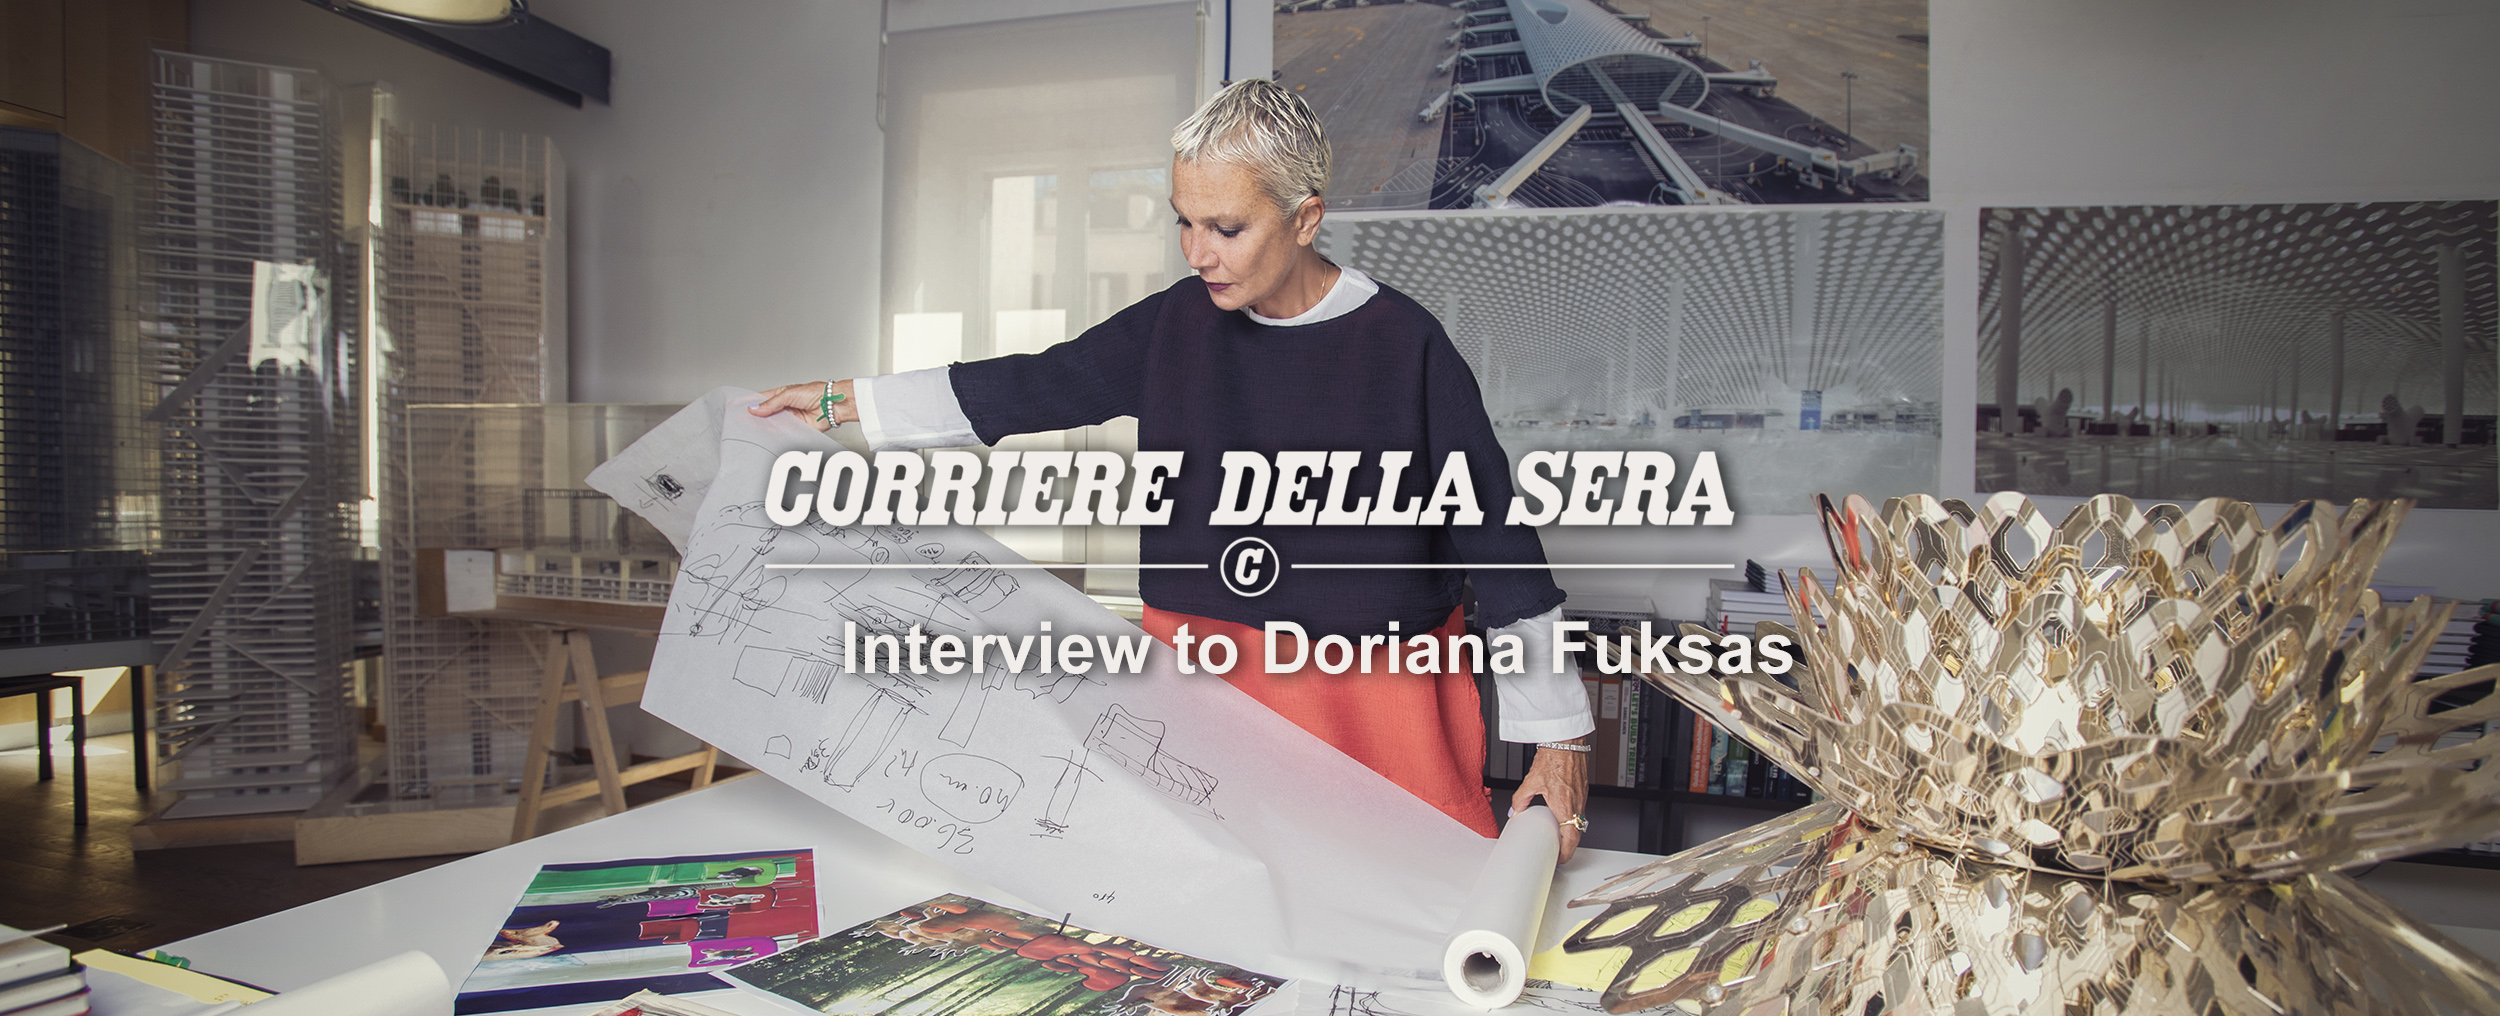 Interview to Doriana Fuksas by Ornella Sgroi on Corriere della Sera2021, March 13